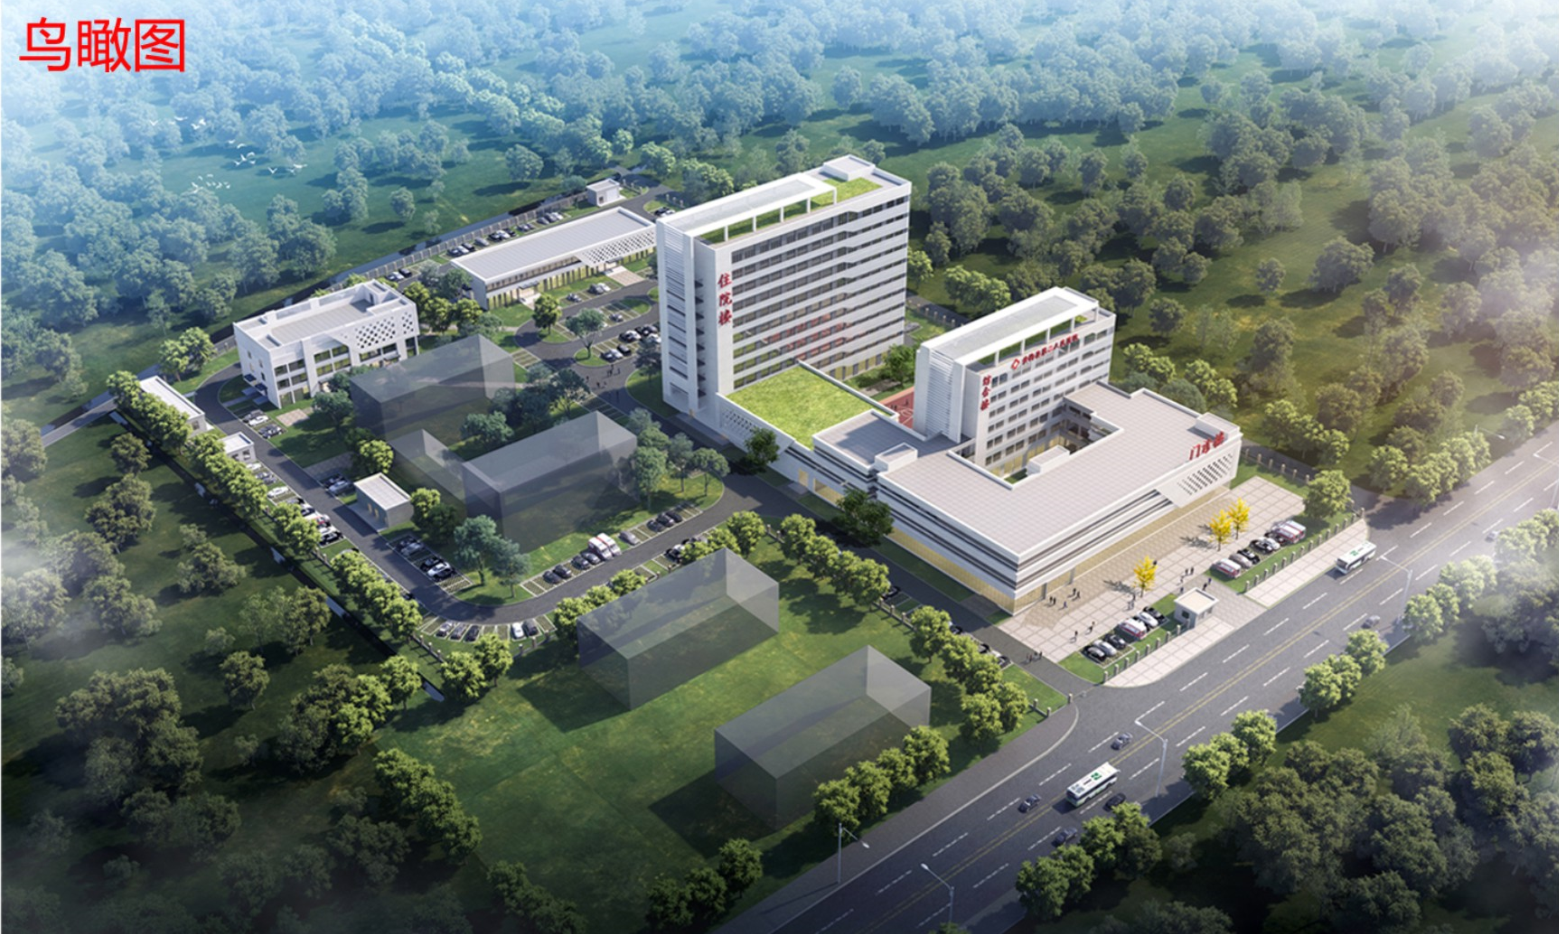 黄梅县第二人民医院整体搬迁工程规划方案批后公示